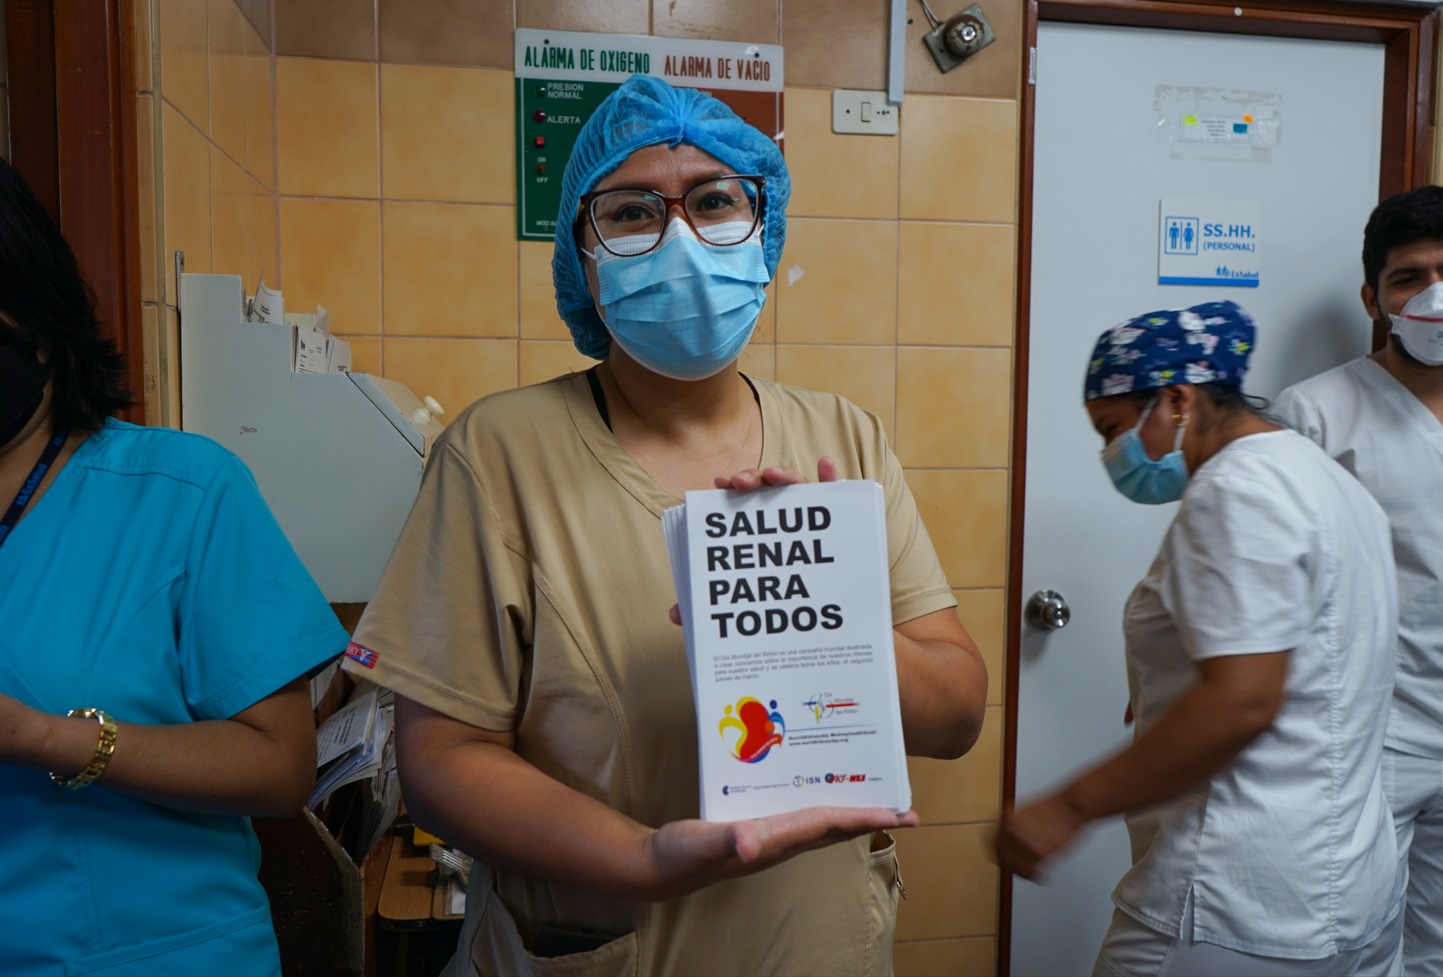 Essalud - Día Mundial del Riñón: hospital Sabogal de EsSalud dio inicio a la campaña “Salud renal para todos”